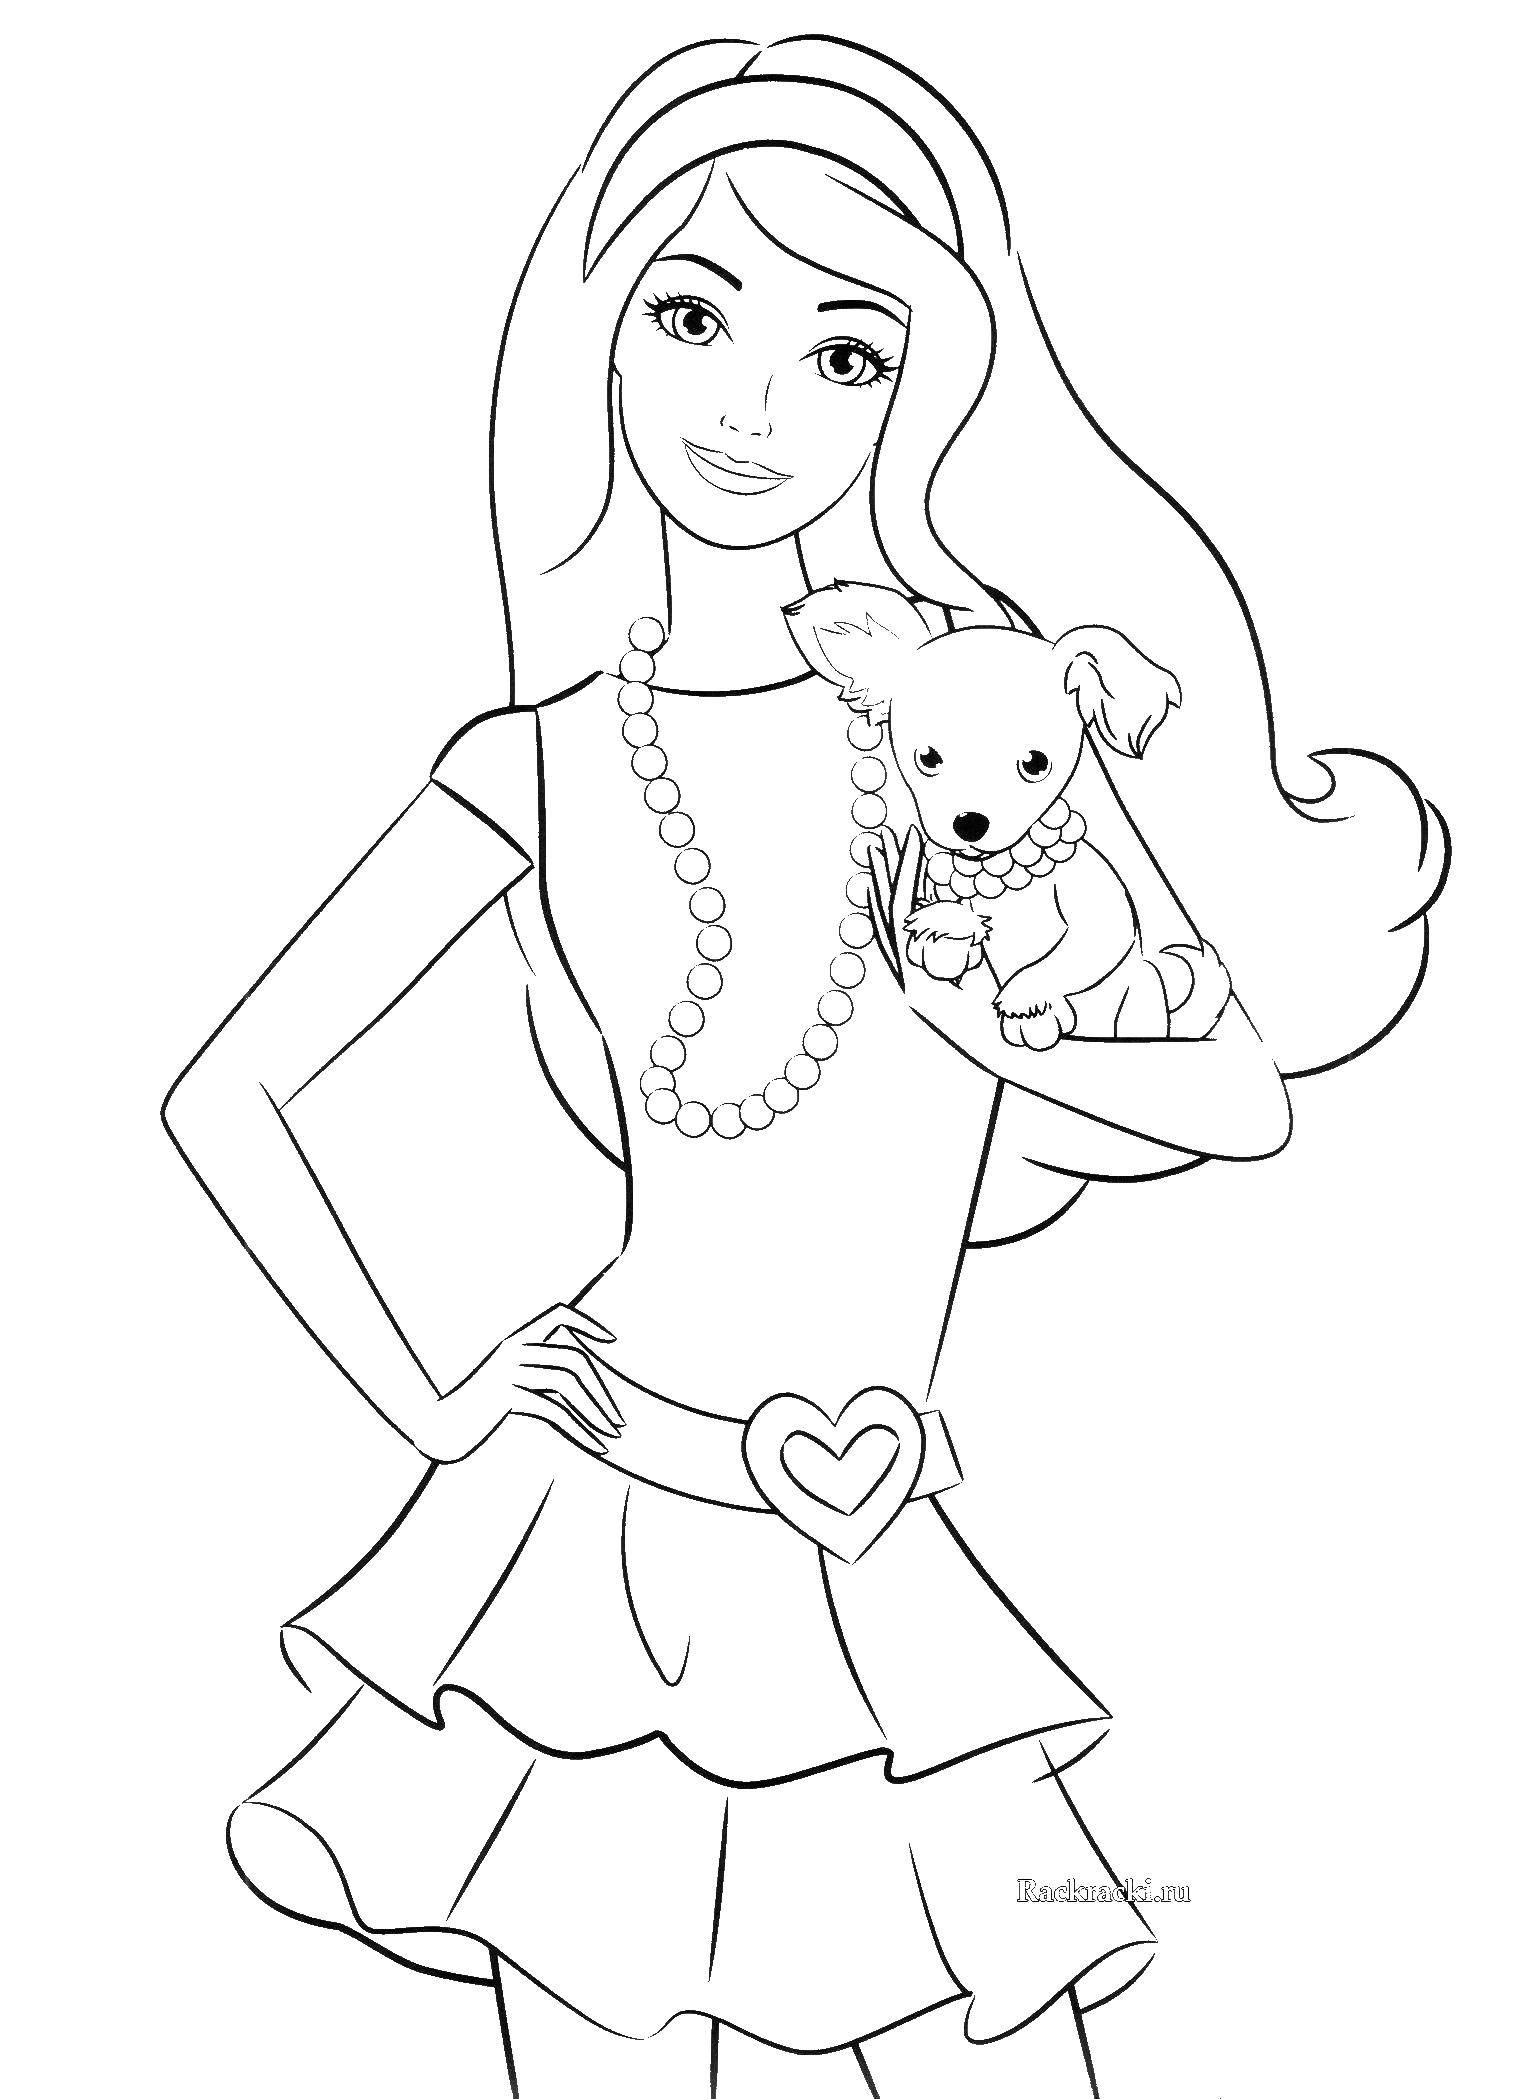 Название: Раскраска Барби с щеночком. Категория: Барби. Теги: барби, девочка. кукла, щеночек.